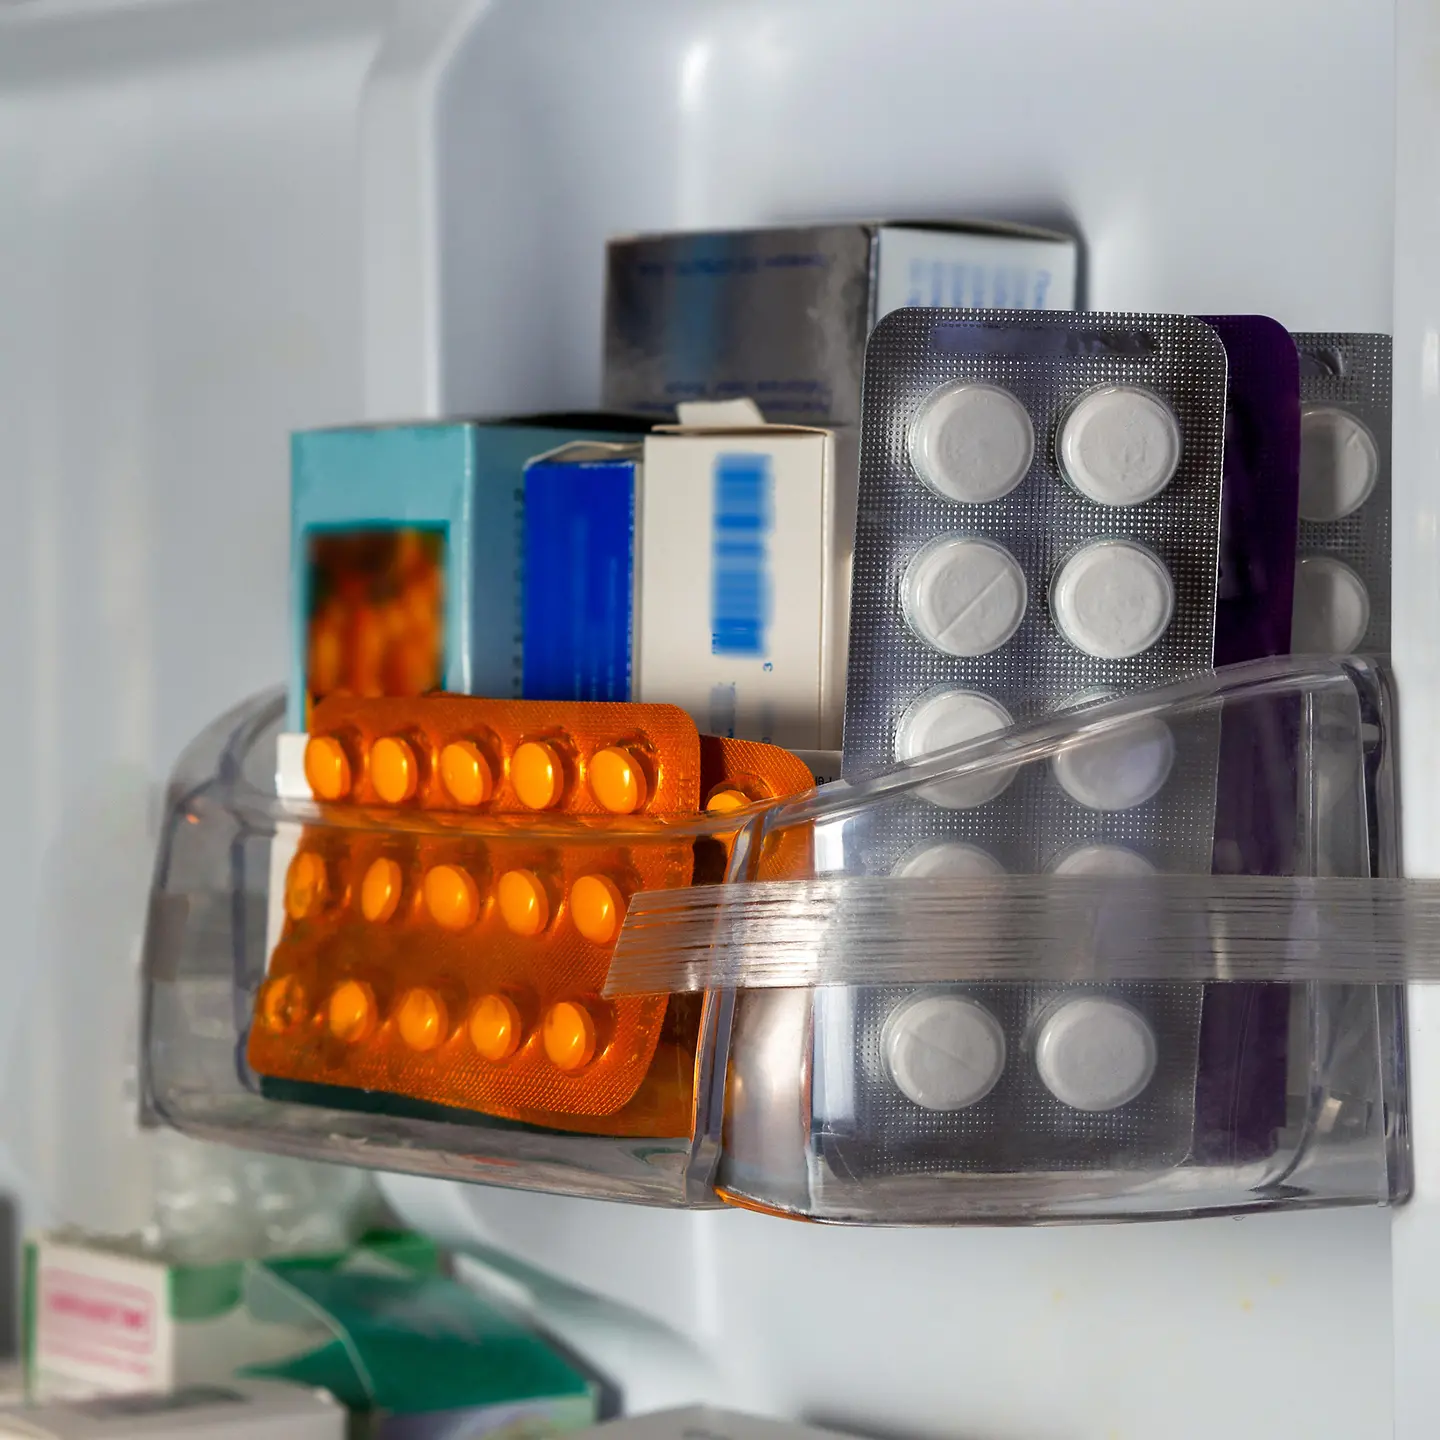 Zu sehen sind Arzneimittel im Kühlschrank 